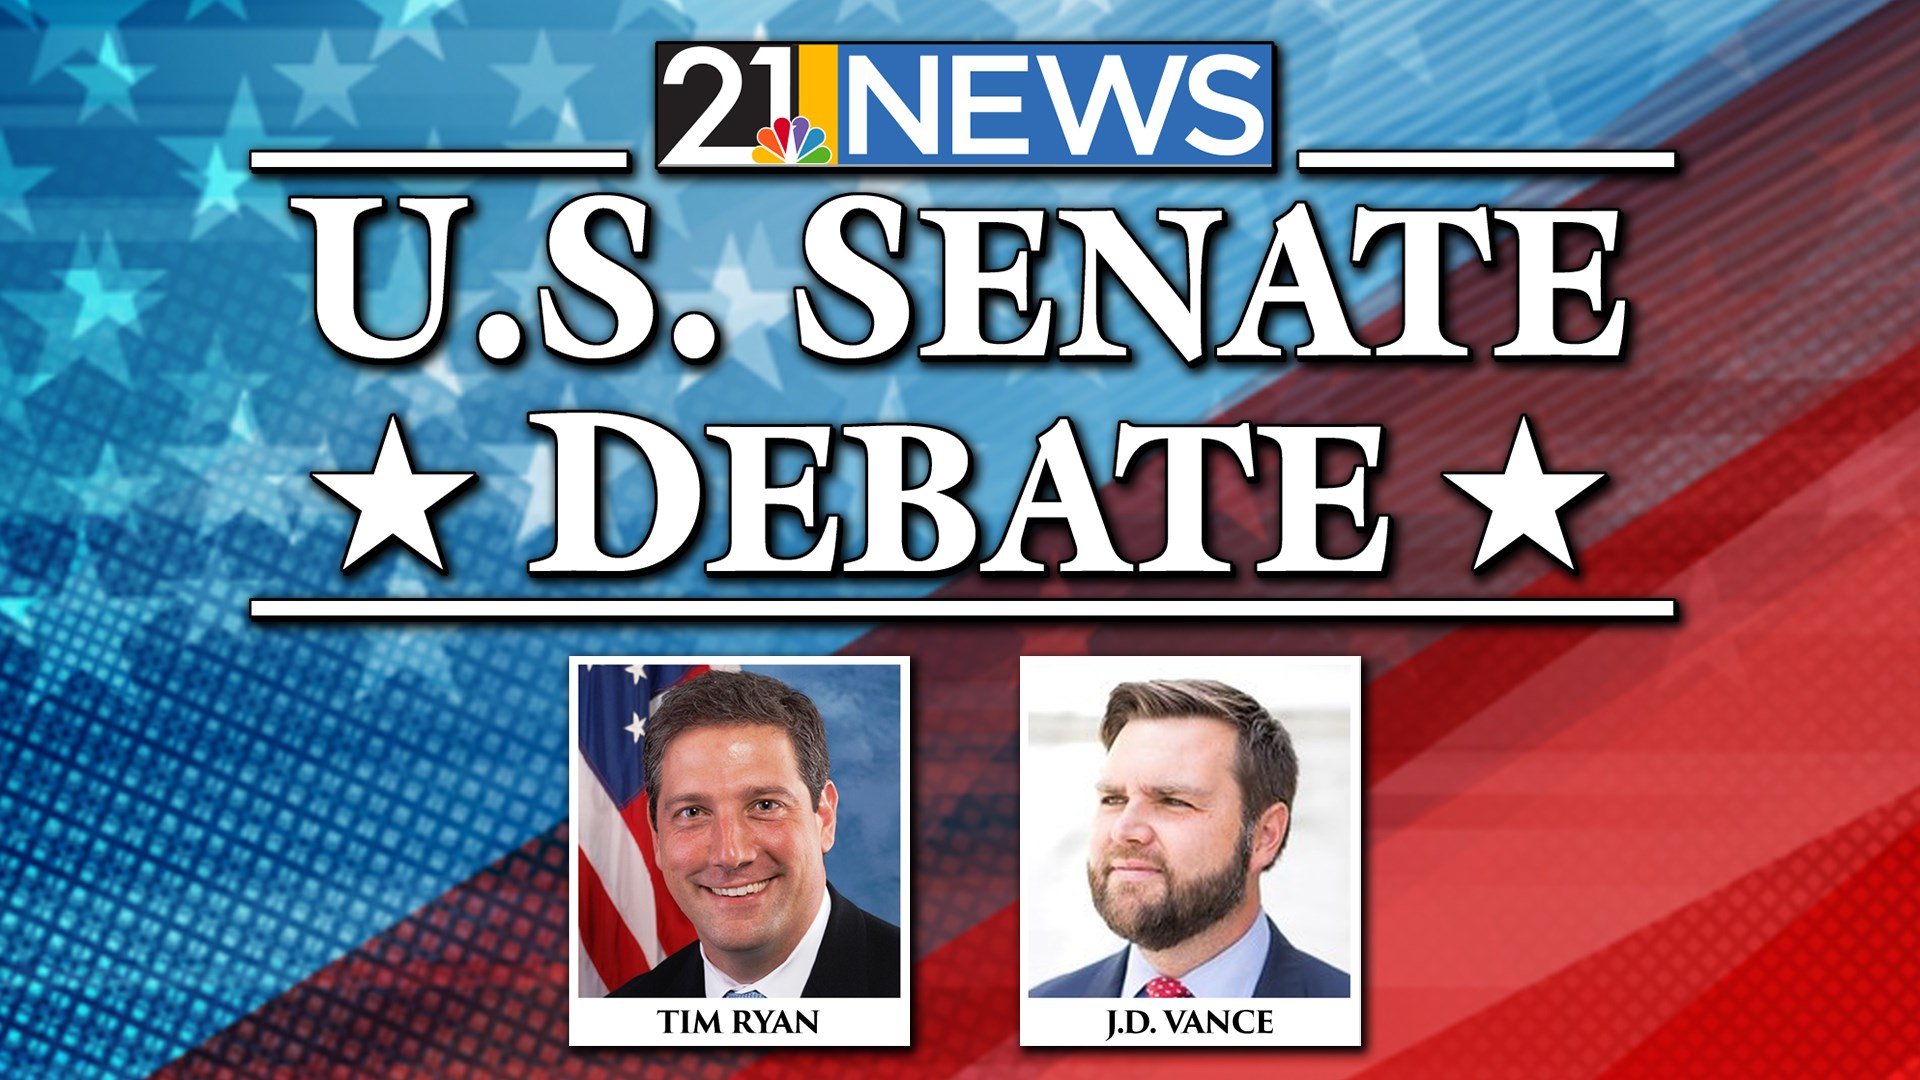 Polls show Ohio senate race too close to call before WFMJTV debate